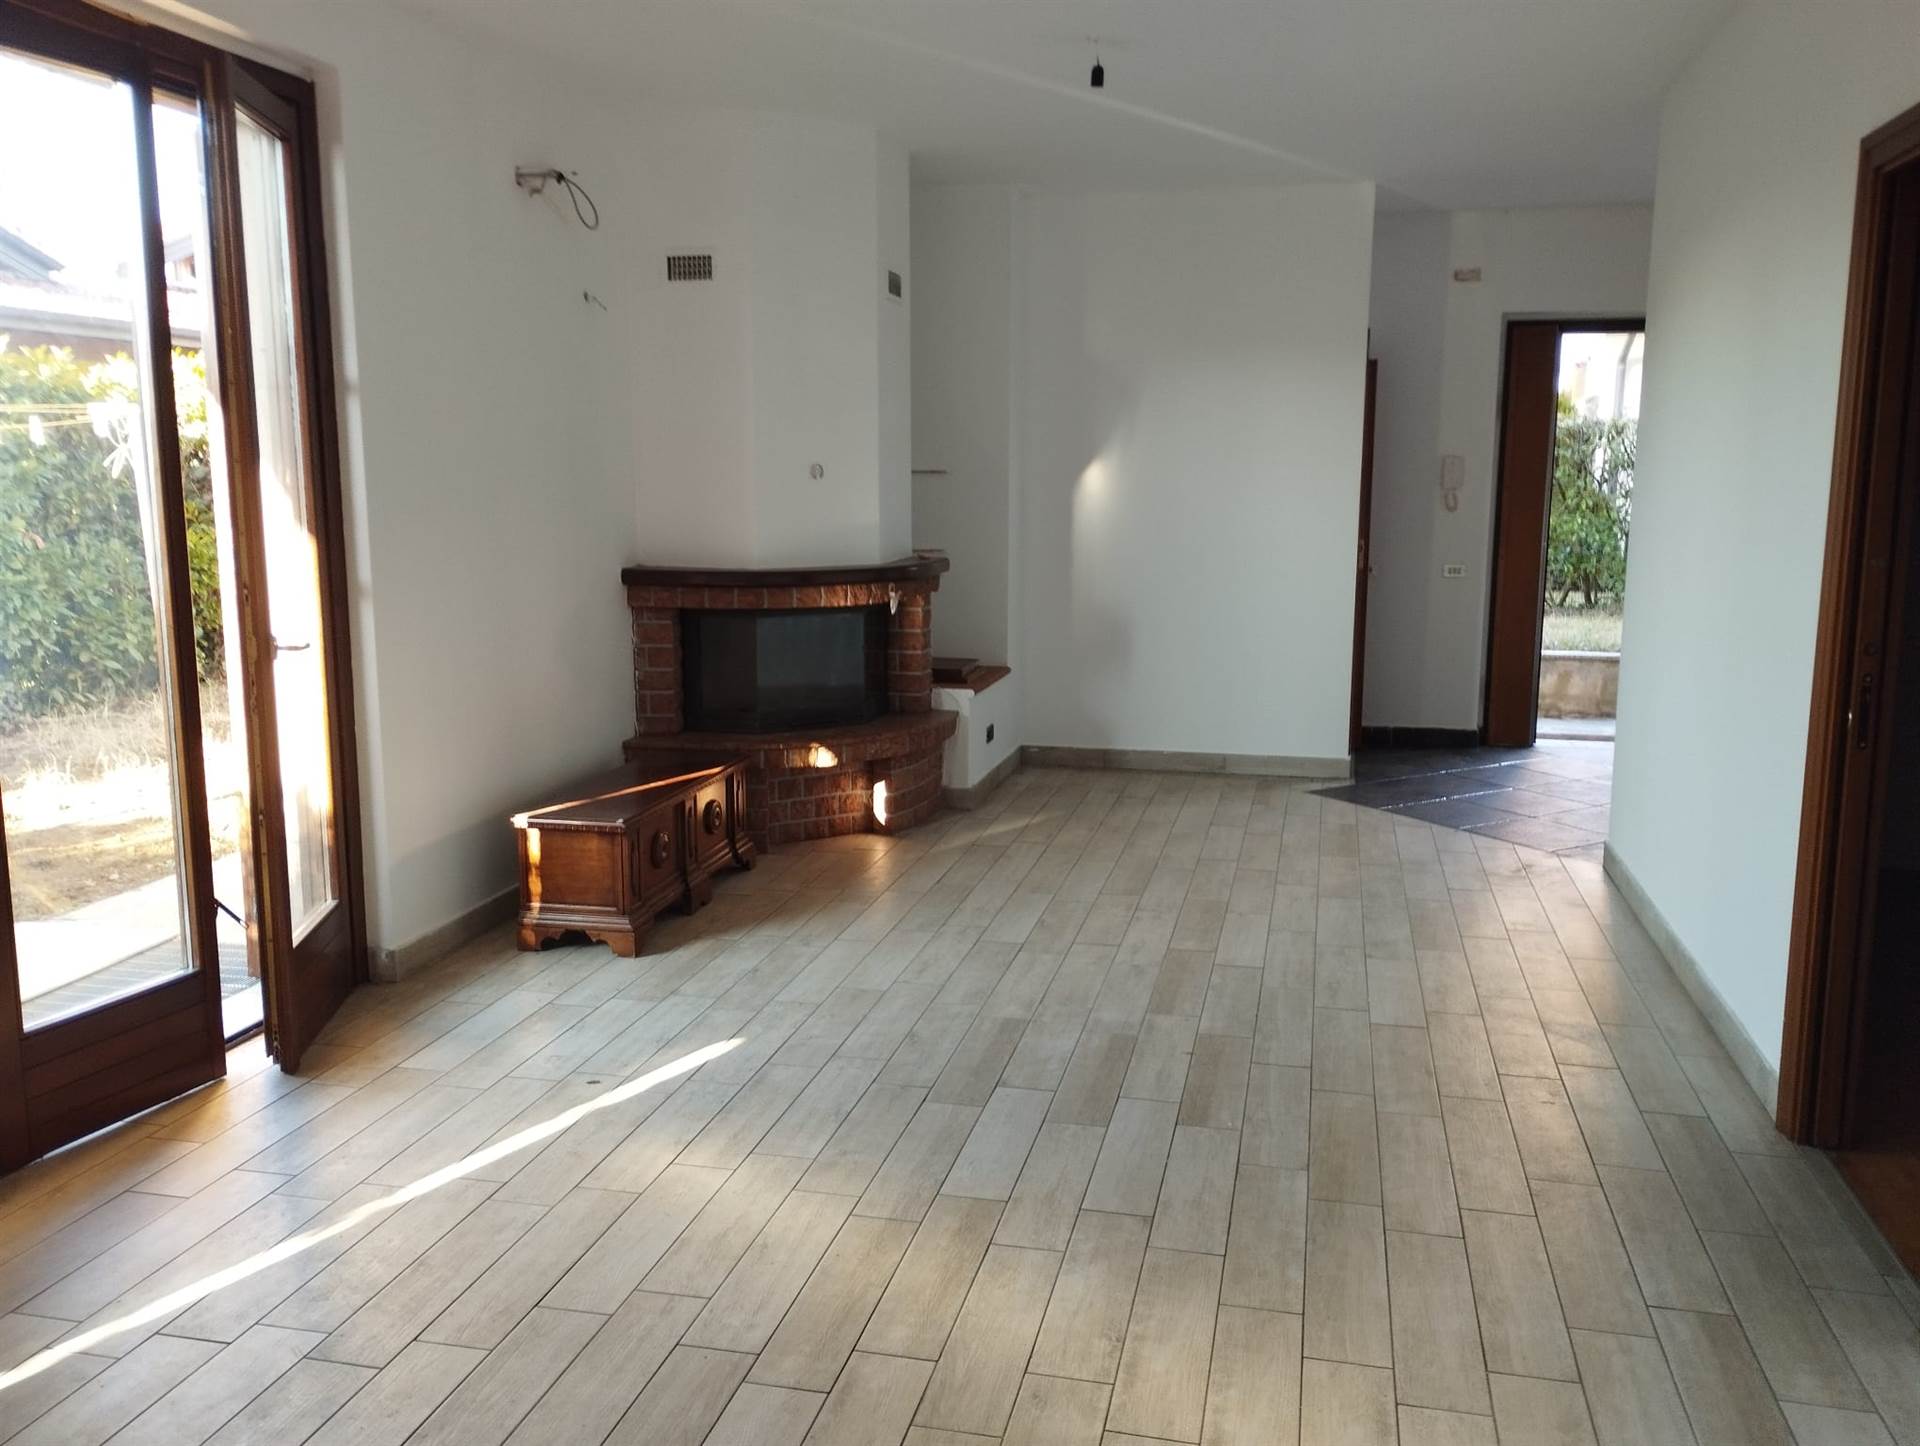 Appartamento in vendita a Fara Gera d'Adda, 3 locali, prezzo € 165.000 | PortaleAgenzieImmobiliari.it